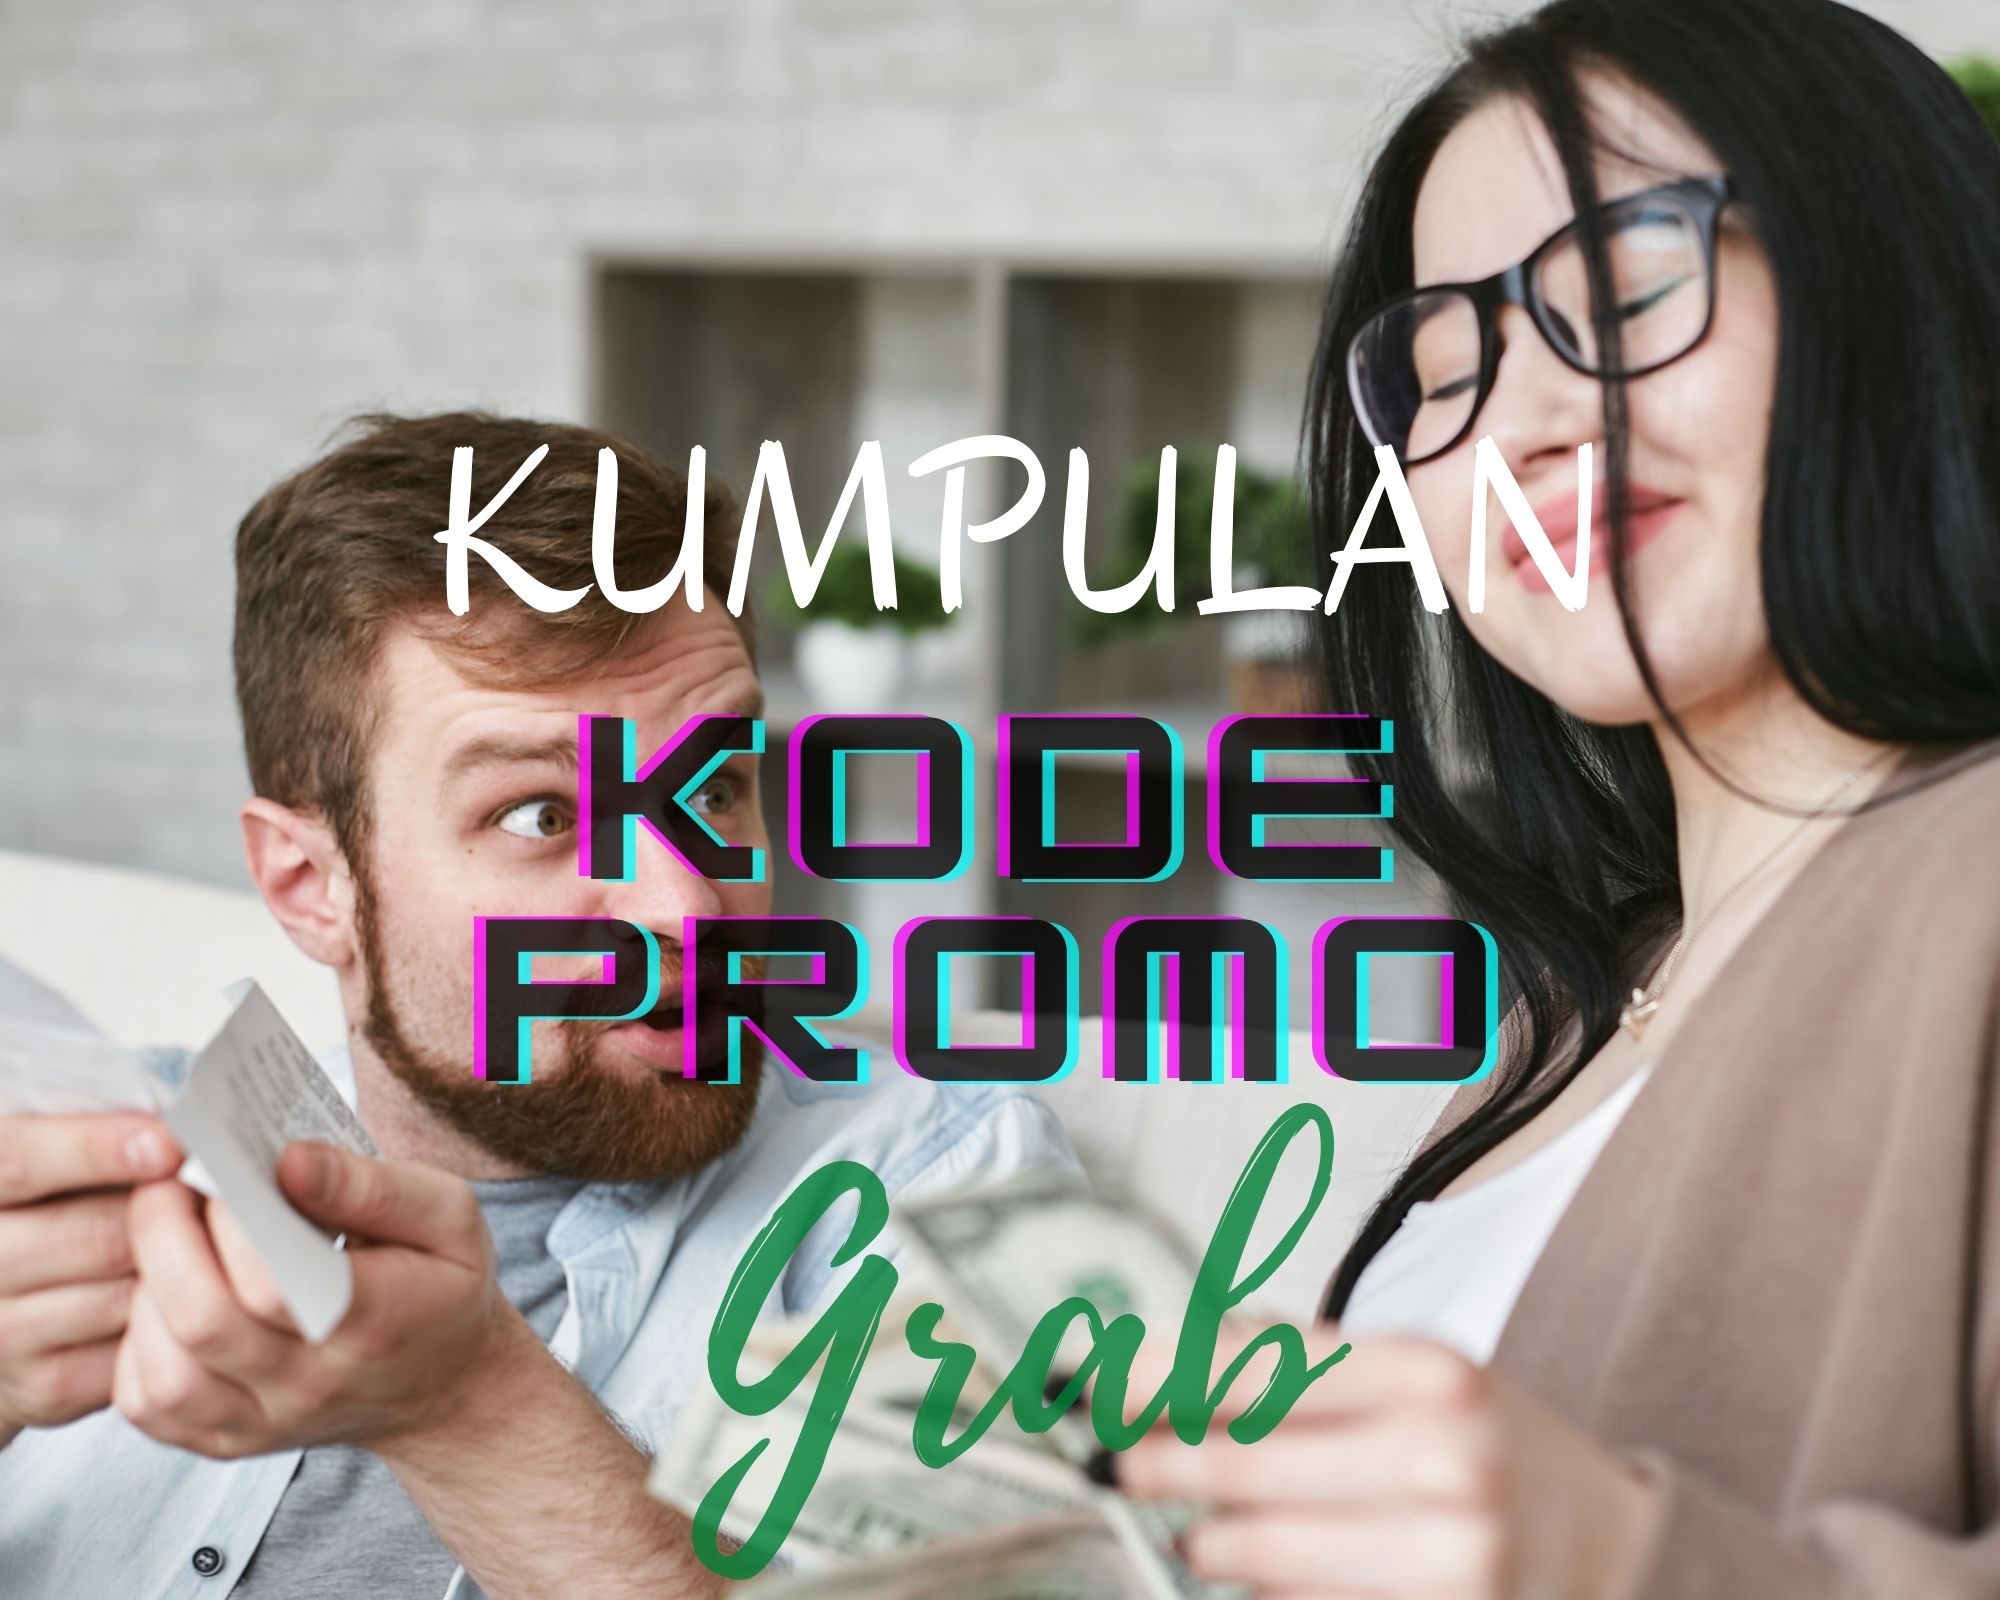 Kumpulan Kode Promo Grab, GrabCar, GrabBike, GrabFood Juli 2022 untuk dapatkan Cash Back, Bonus dan Diskon Terbaru(ILUSTRASI)